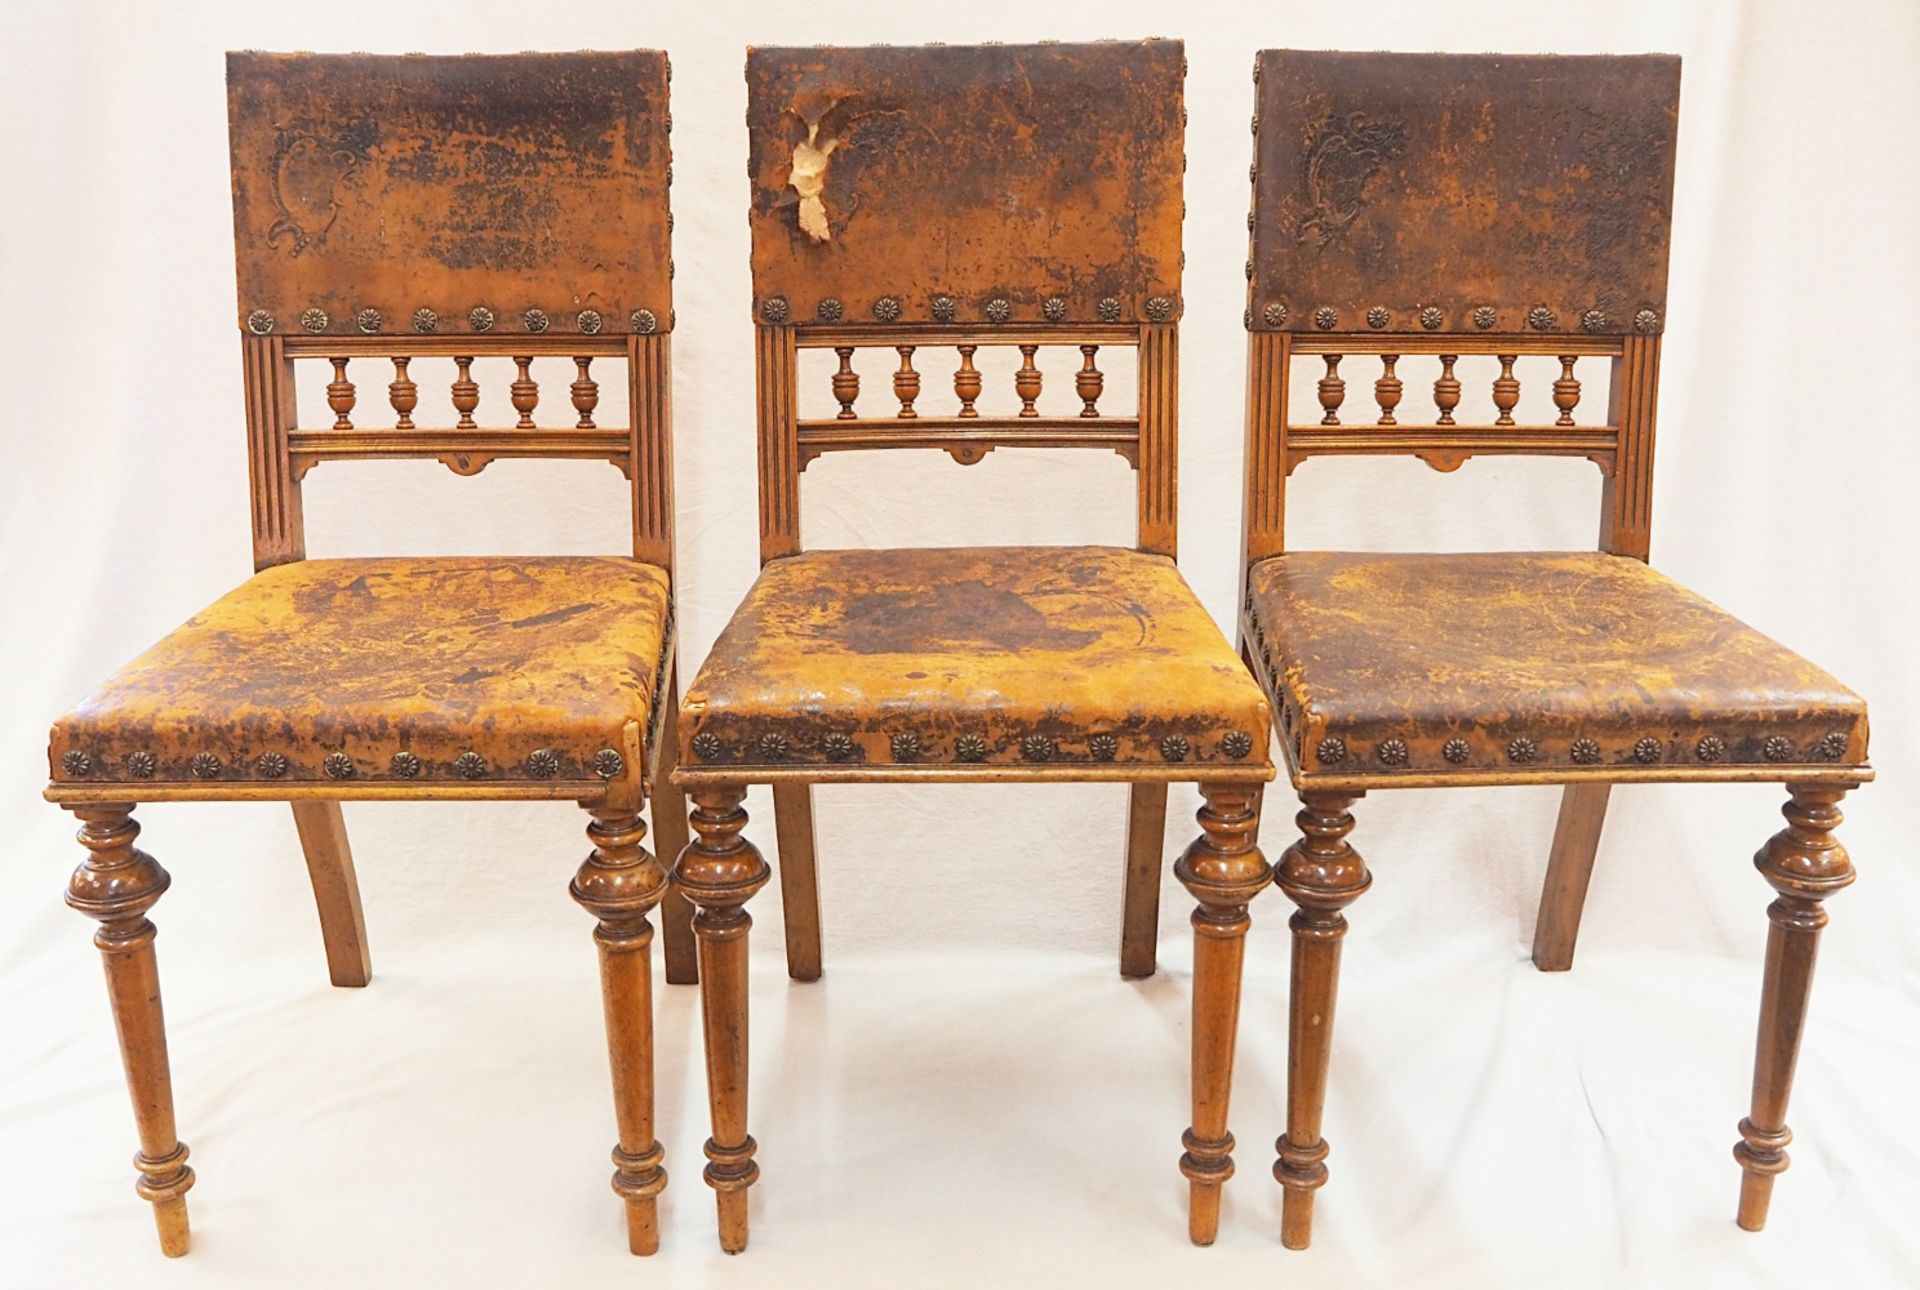 3 Stühle 19. Jh. Holz mit Lederbezug, Rückenlehne mit Balustradendekor, Beine z.T. gedrechselt, H ca